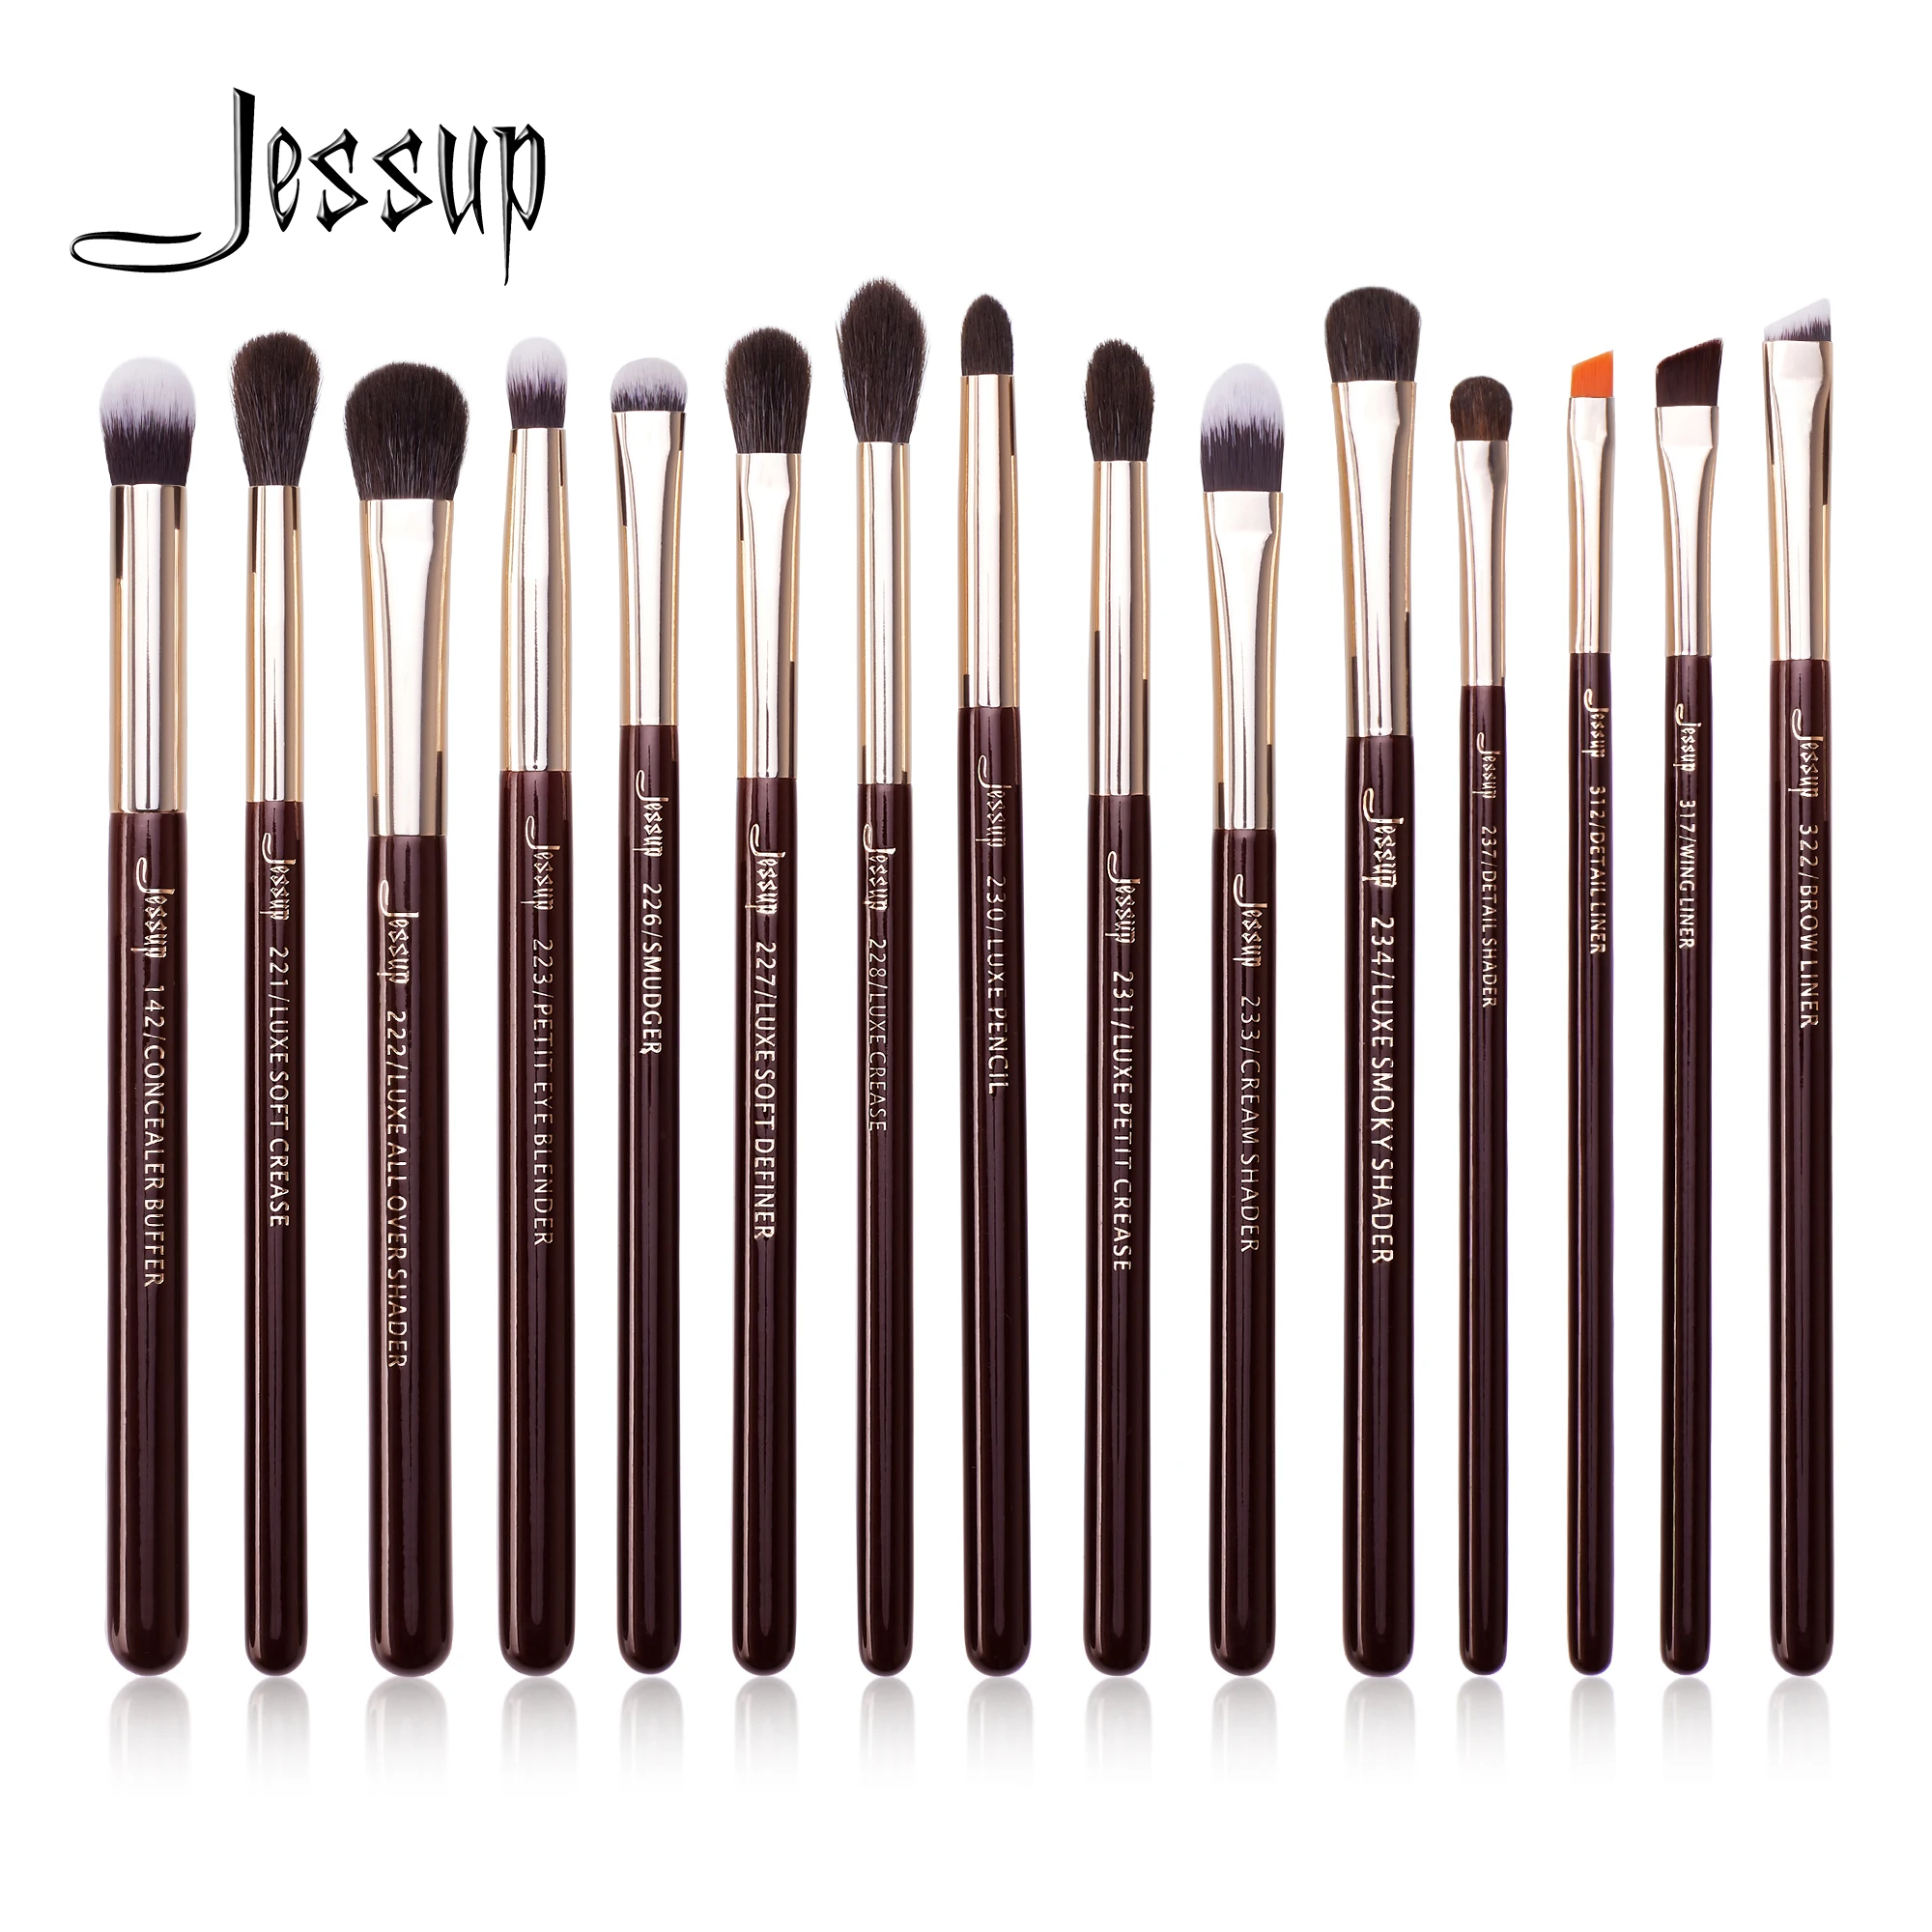 

Jessup Makeup Brushes Set 15pcs Professional Eye Shadow Makeup Brush Kits Eyeshadow Eyeliner Blending Eyebrow Goat Hair